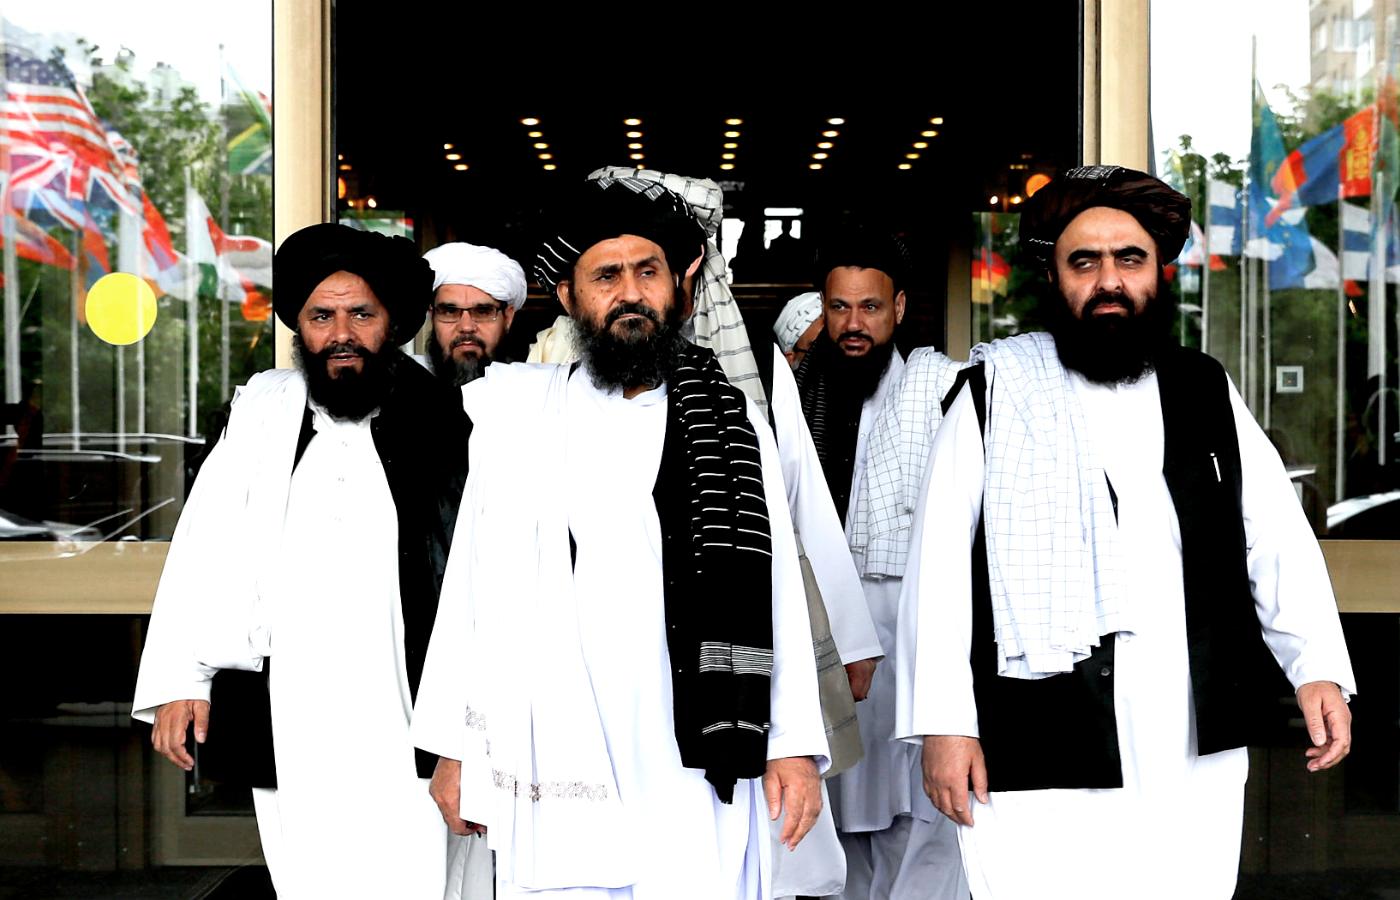 Delegacja talibów w Moskwie, maj 2019 r. Mułła Abdul Ghani Baradar w środku